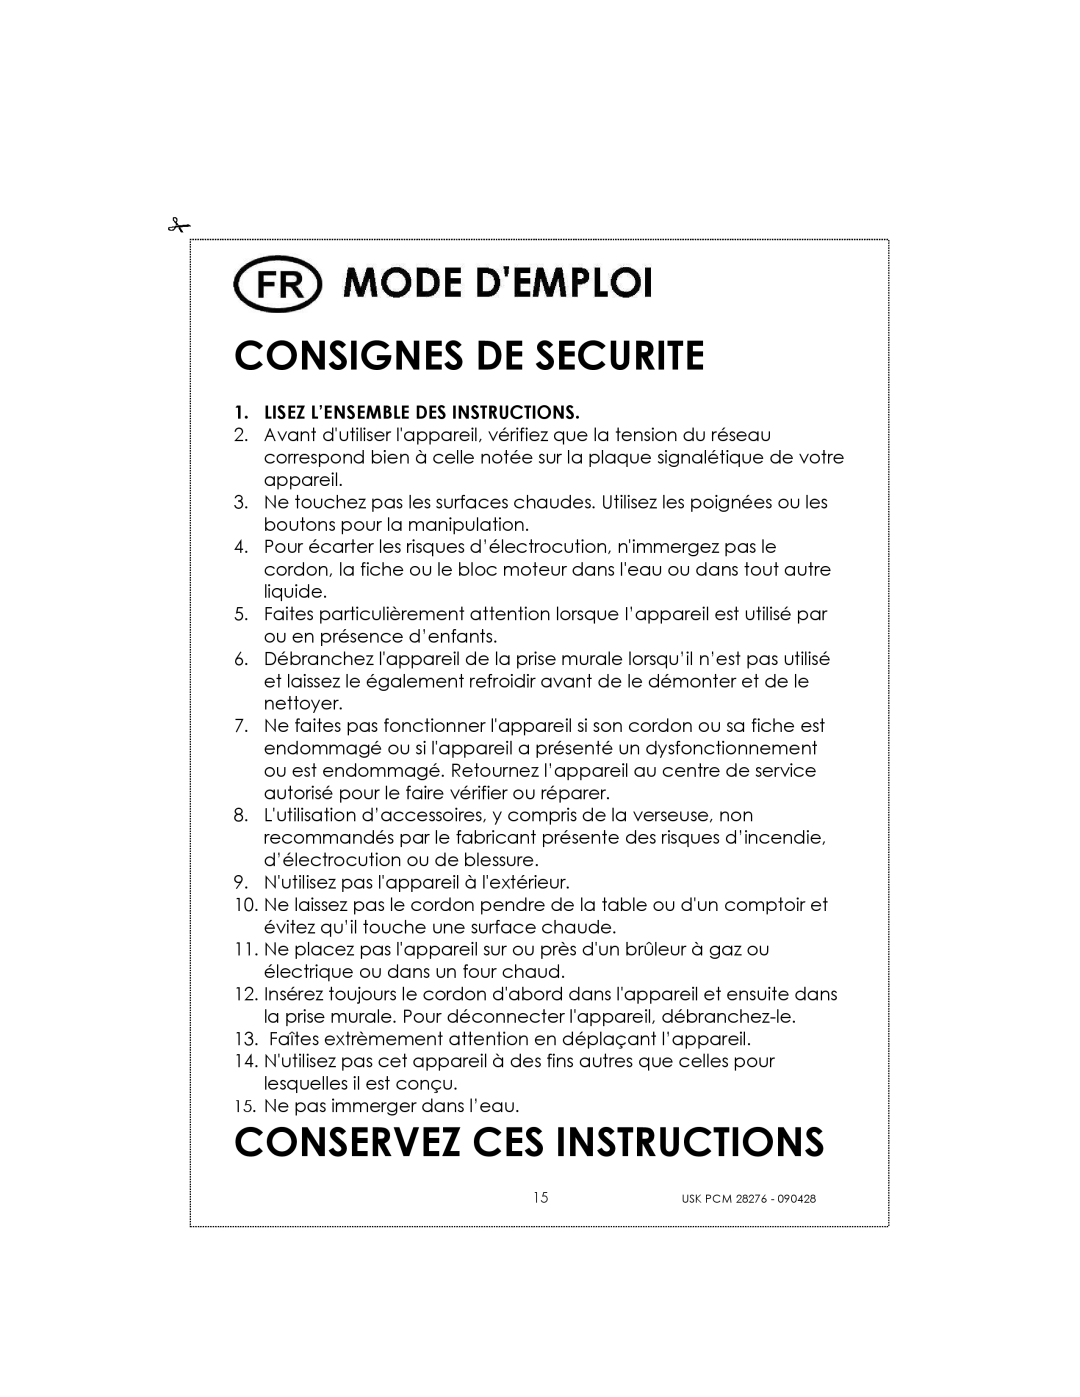 Kalorik USK PCM 28276 manual Consignes De Securite, Conservez Ces Instructions 